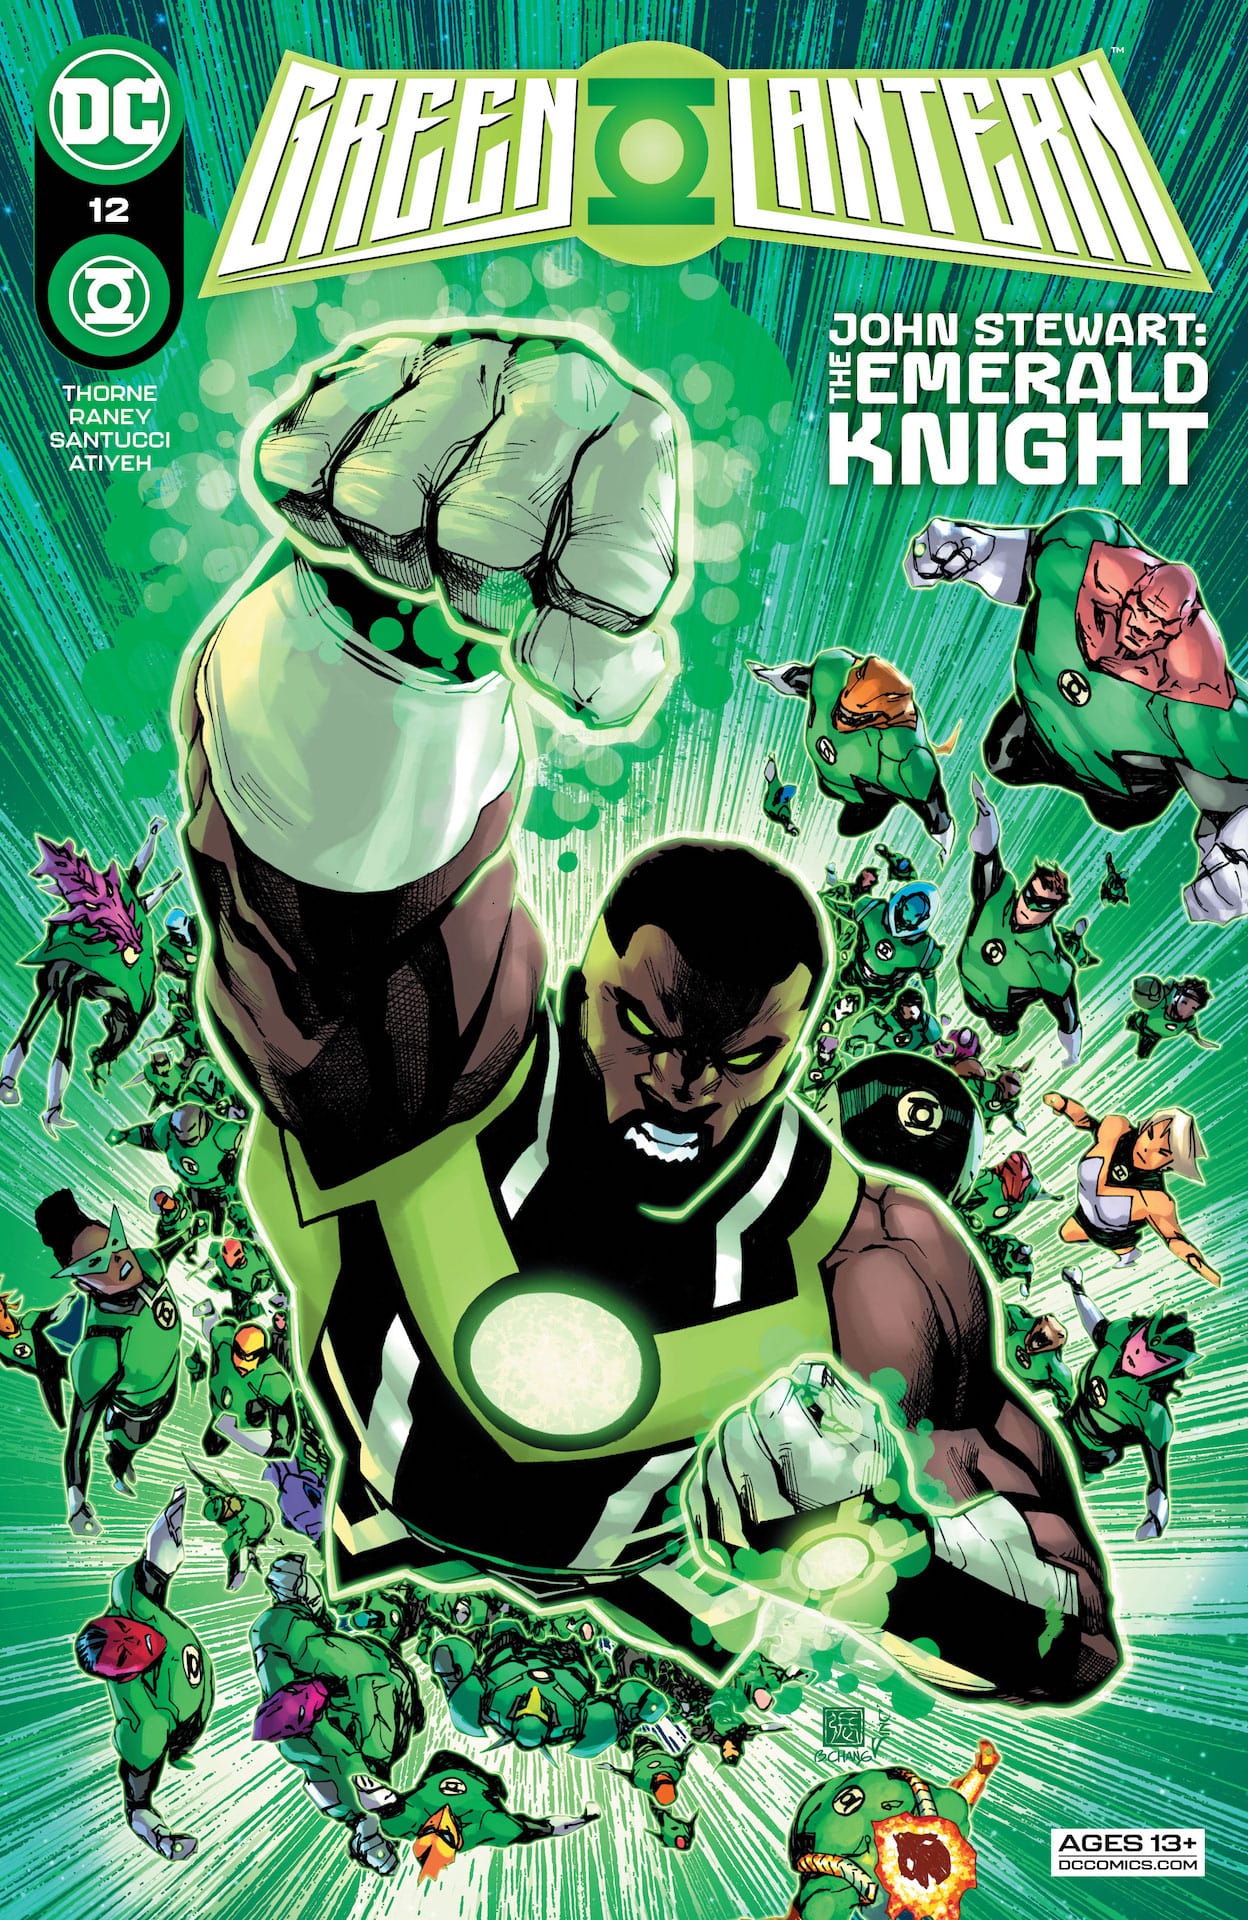 DC Preview: Green Lantern #12